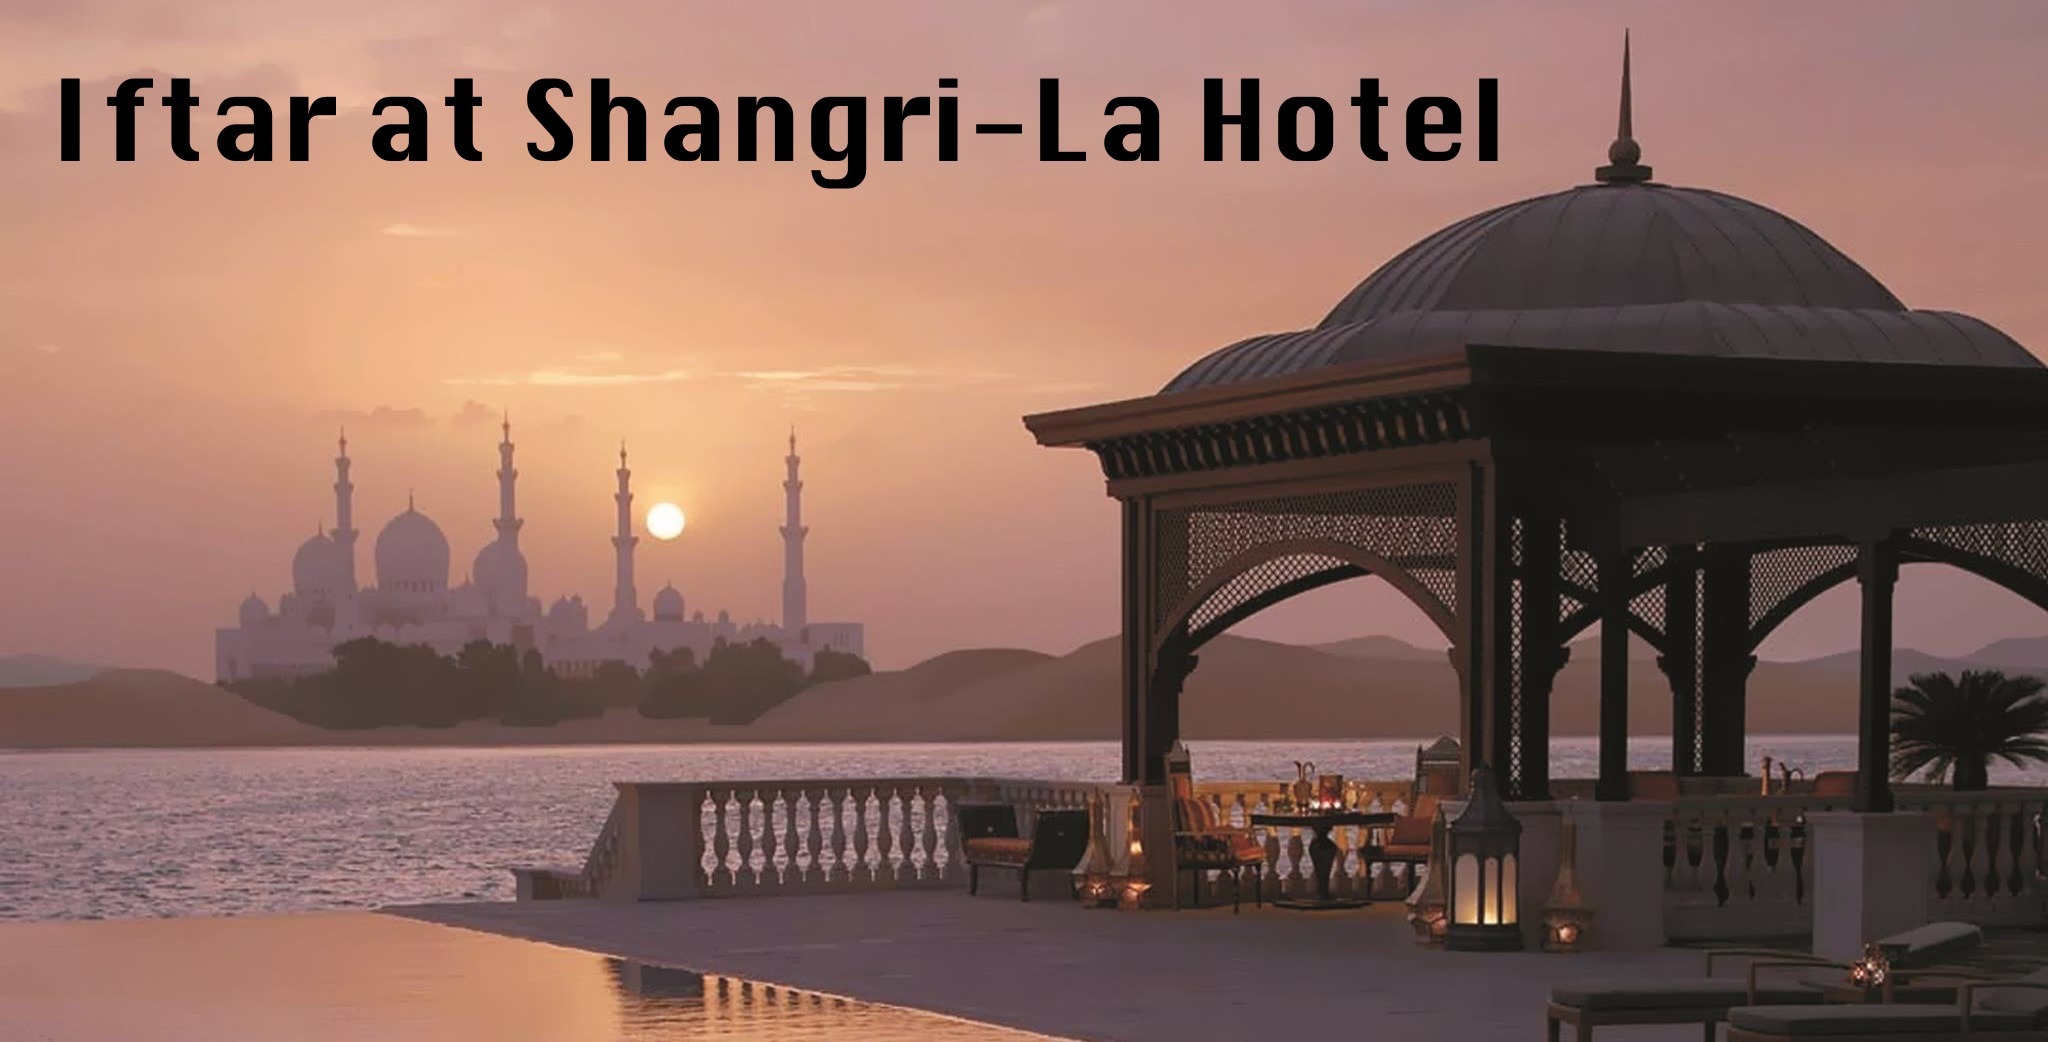 Iftar at Shangri-La Hotel - Coming Soon in UAE